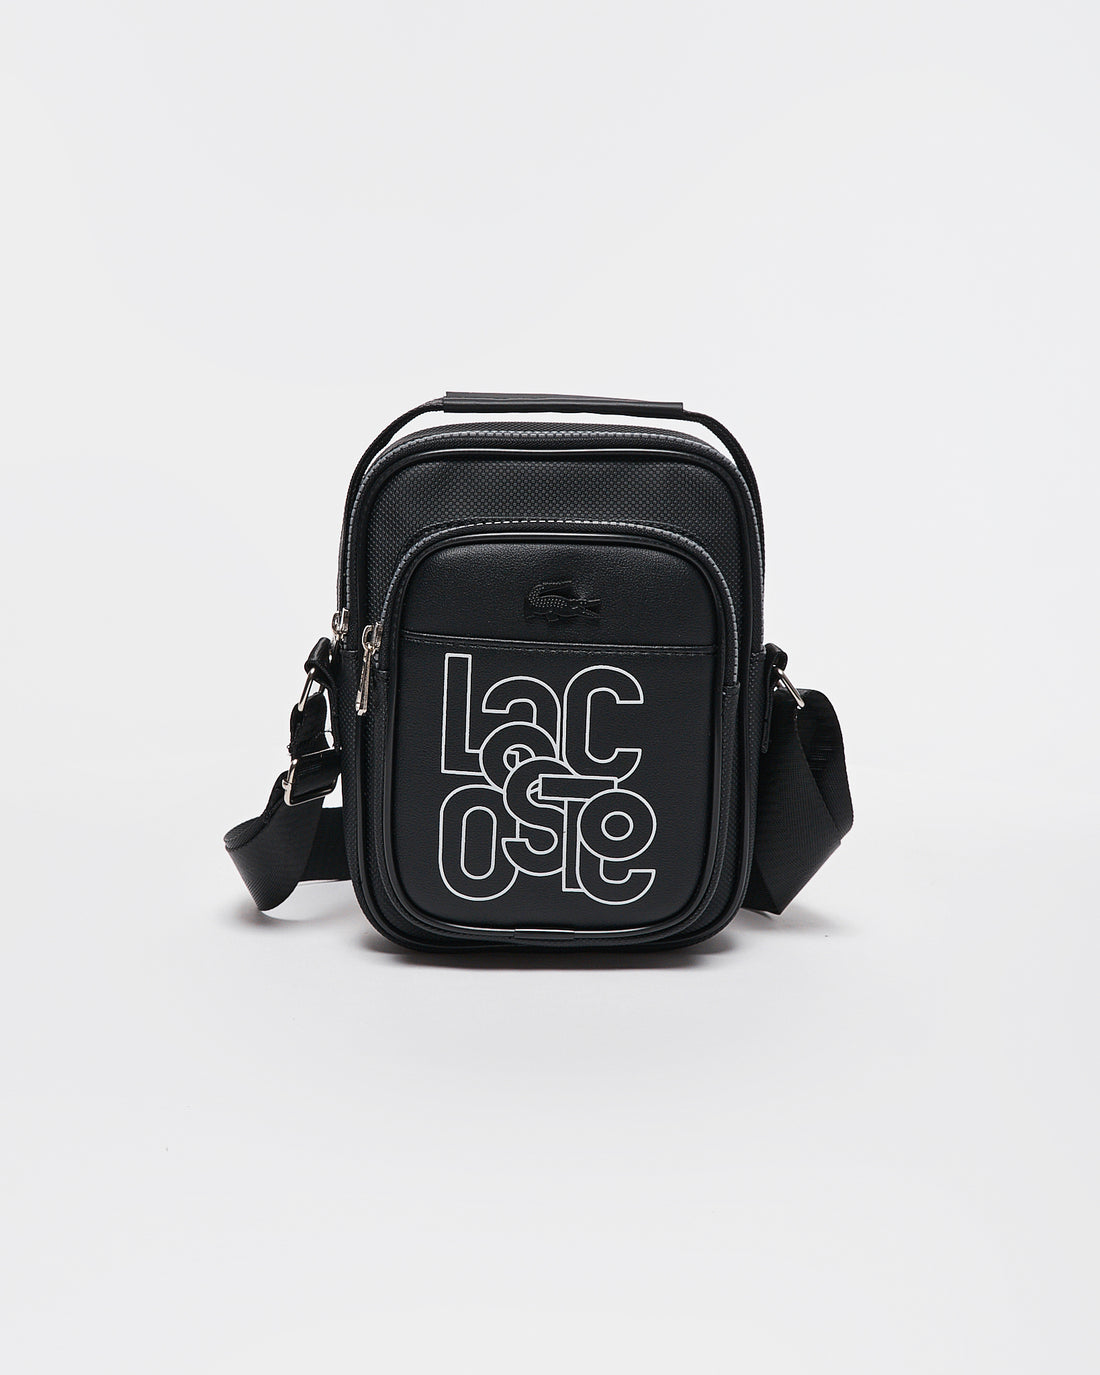 LAC Logo Printed Black Sling Bag 18.90